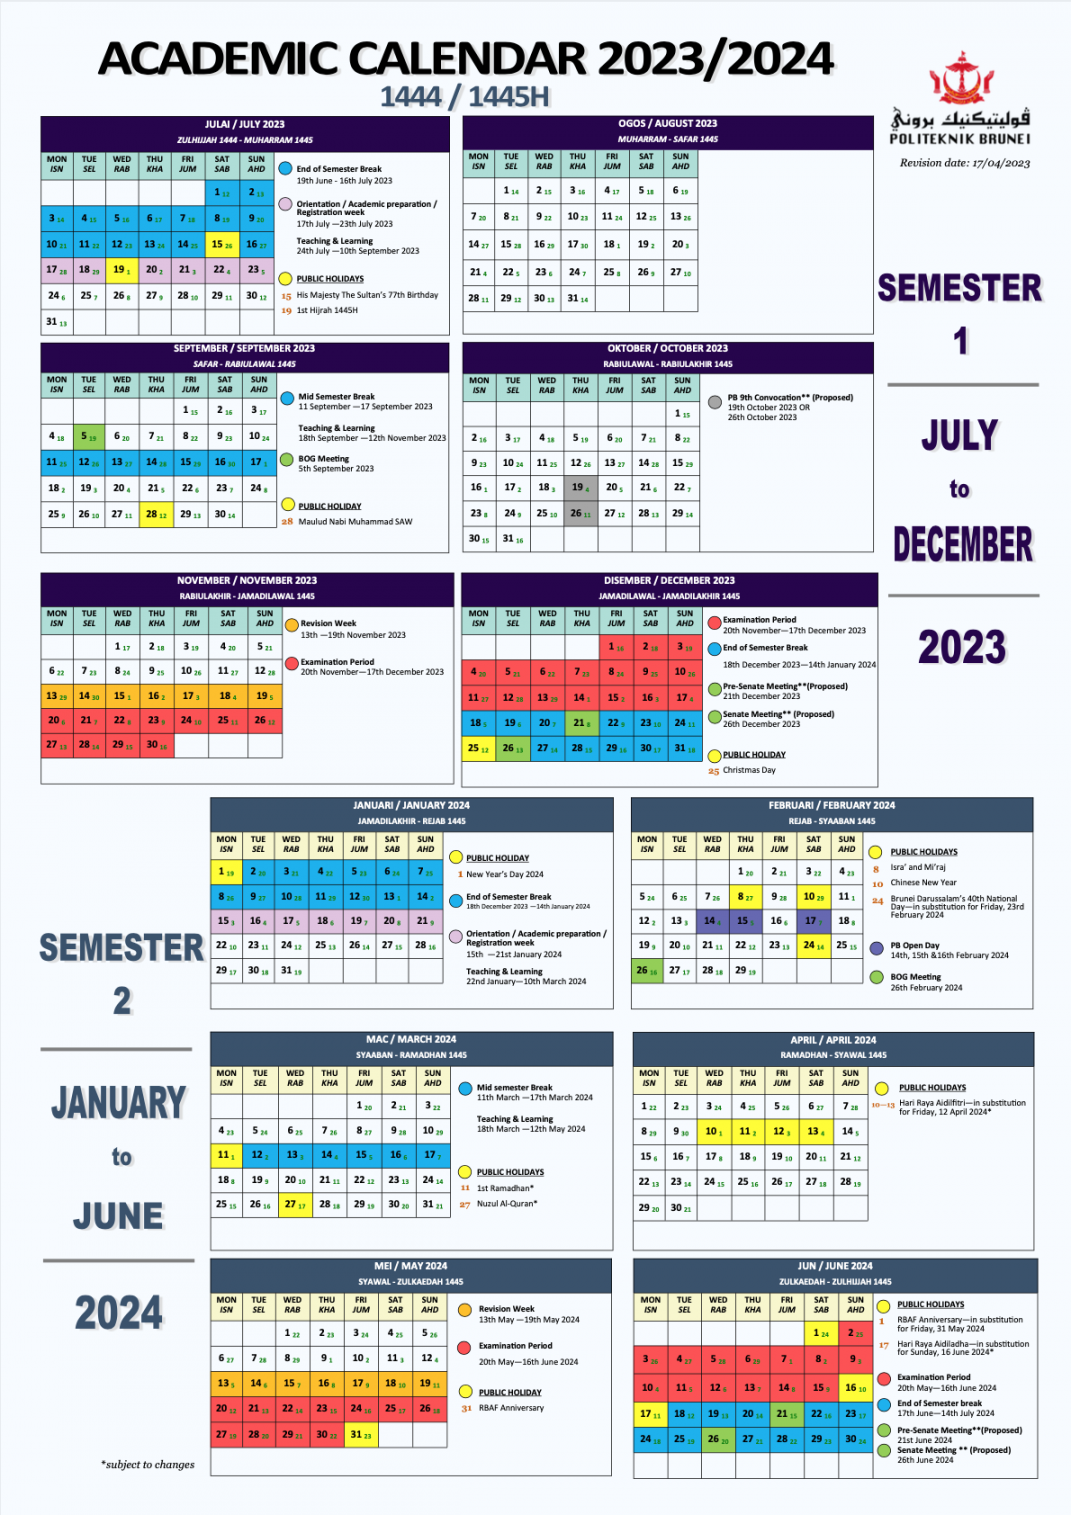 Calendar – Politeknik Brunei